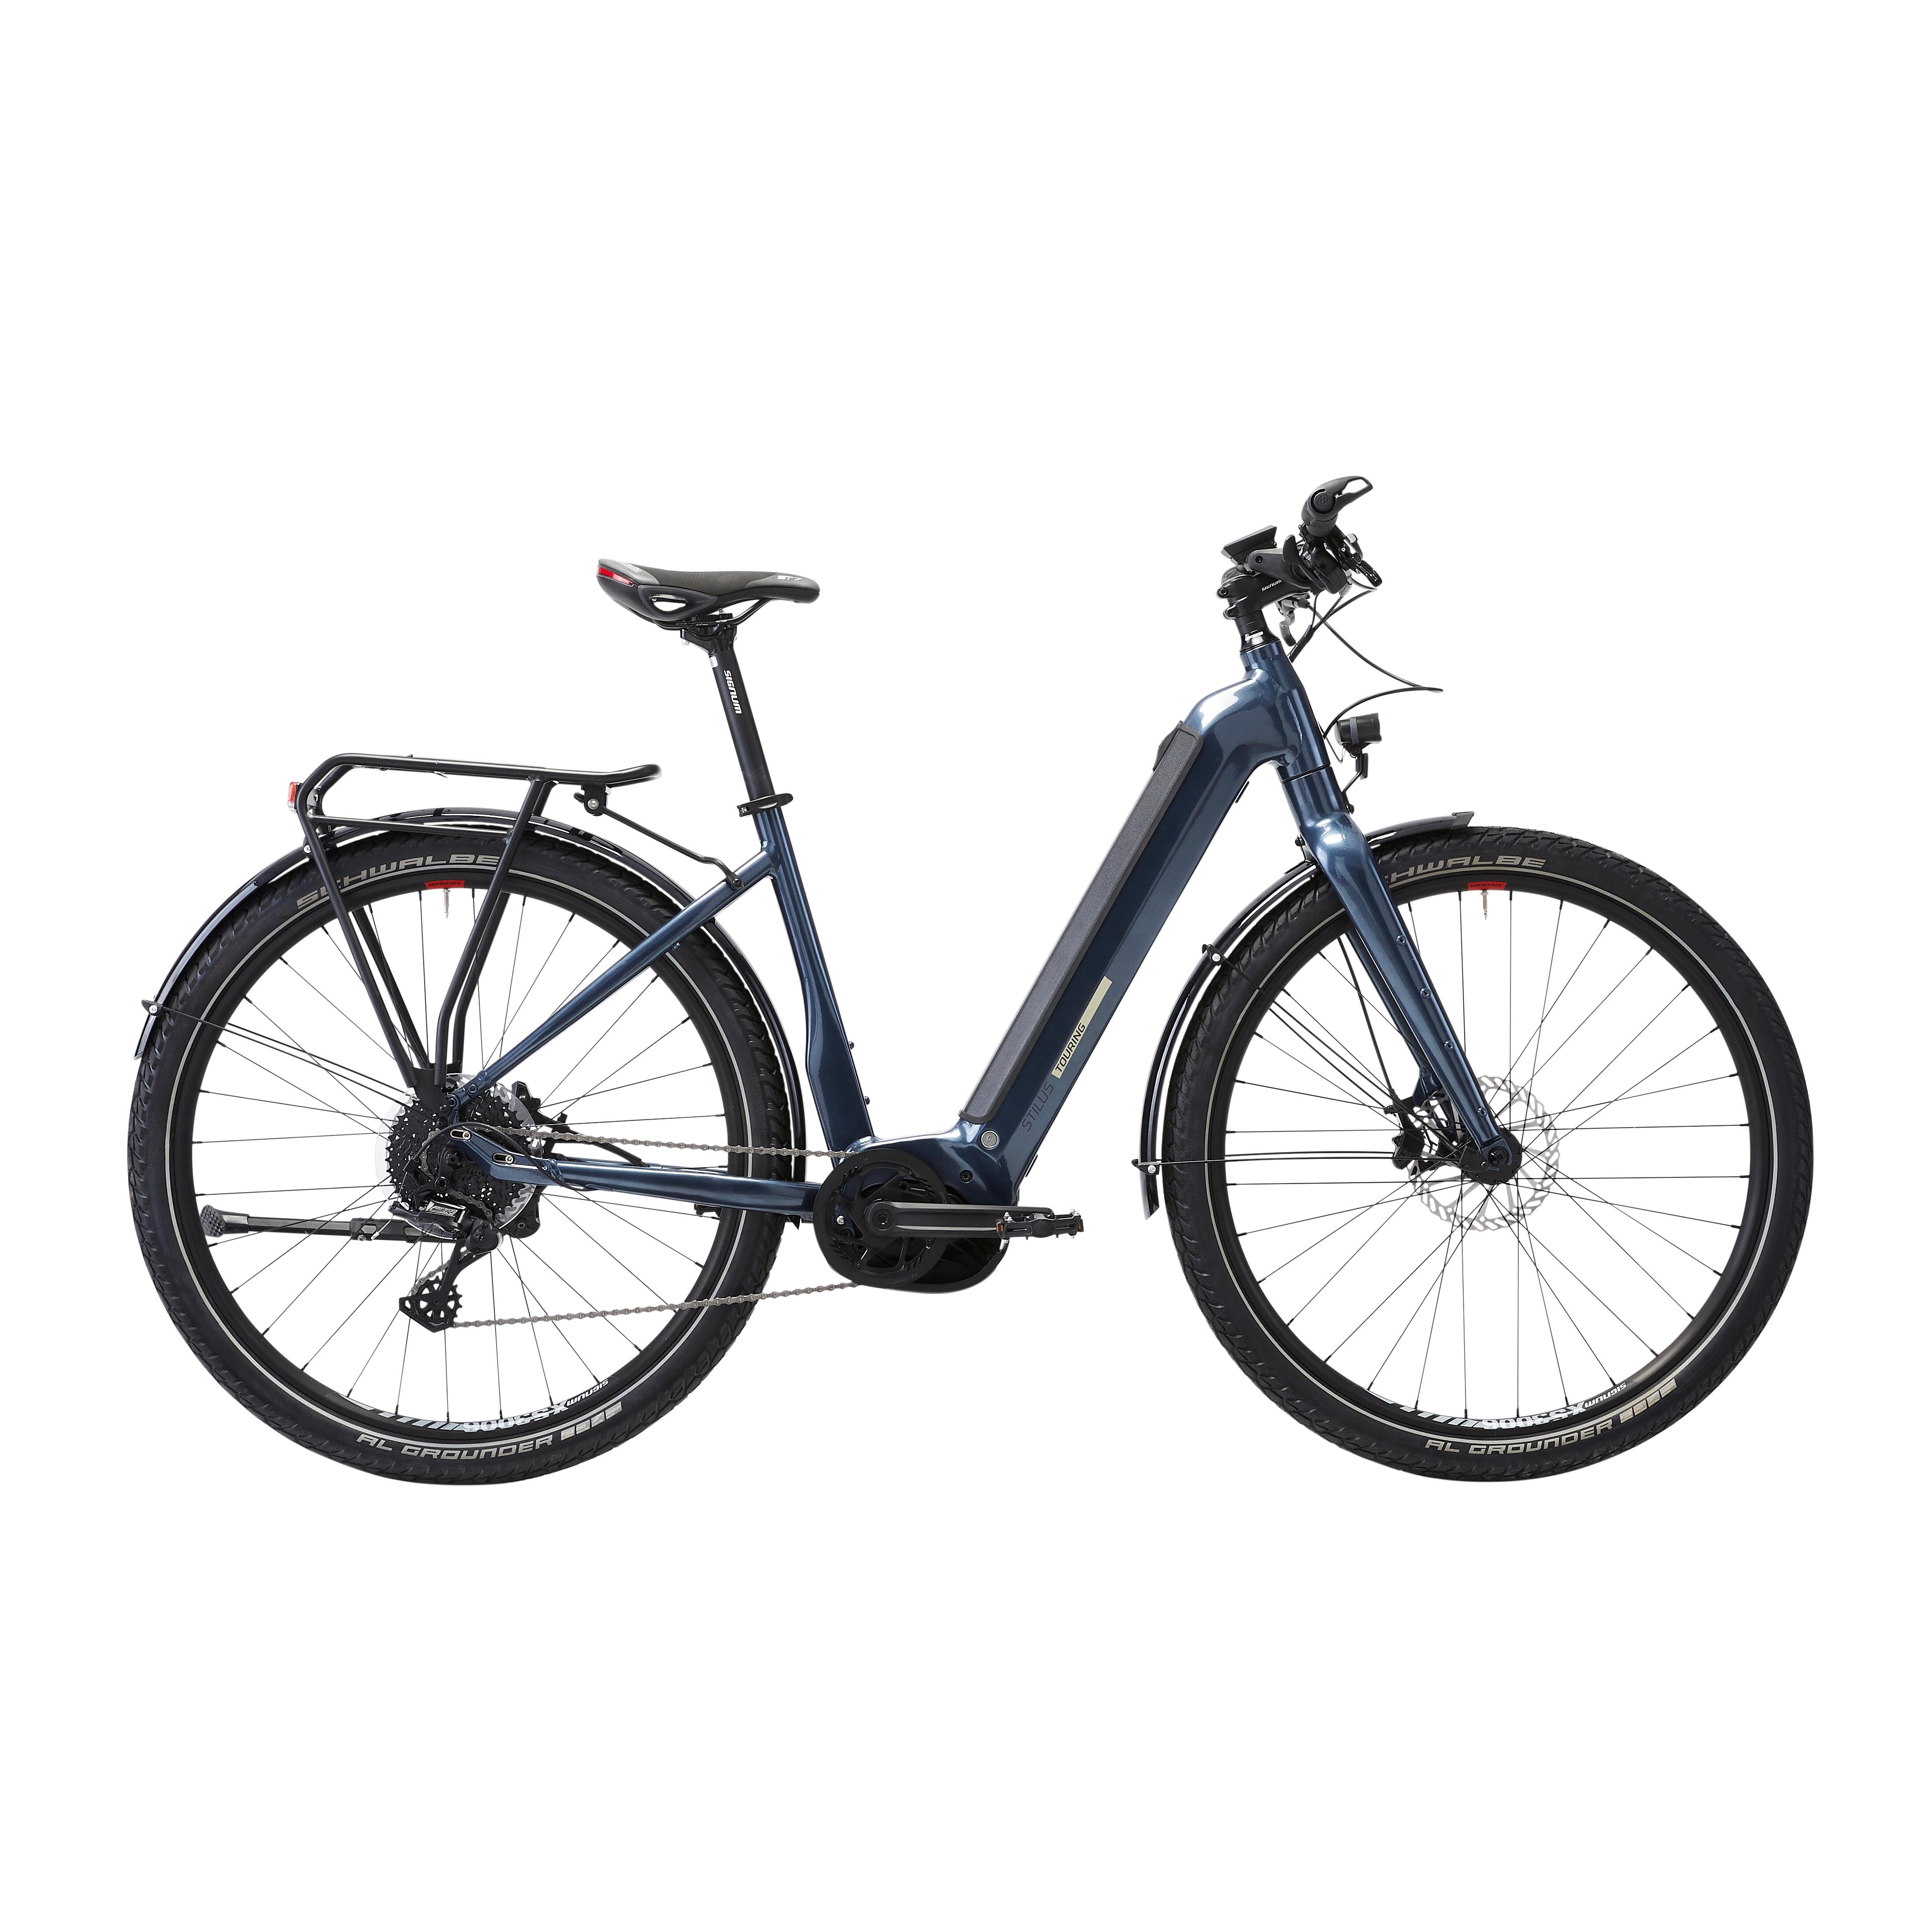 Bicicletă electrică de călătorie cu motor central puternic Bosch – Stilus E-Touring LF bicicleta imagine noua